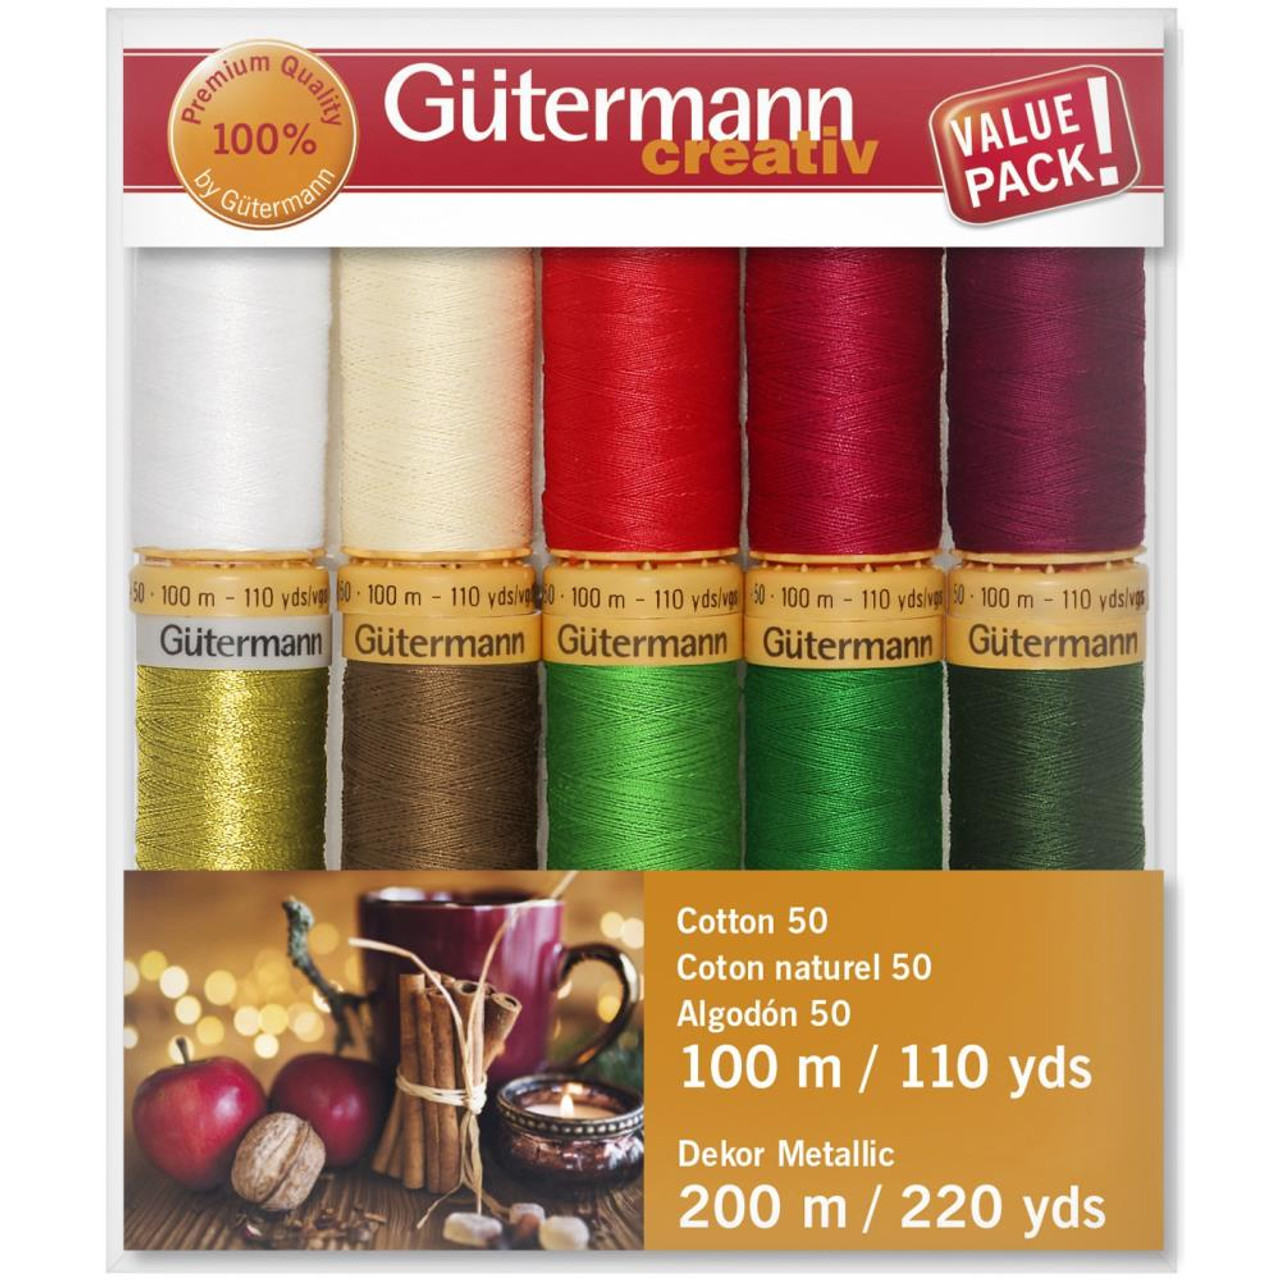 Gutermann Denim Thread, Gold - Fast Delivery